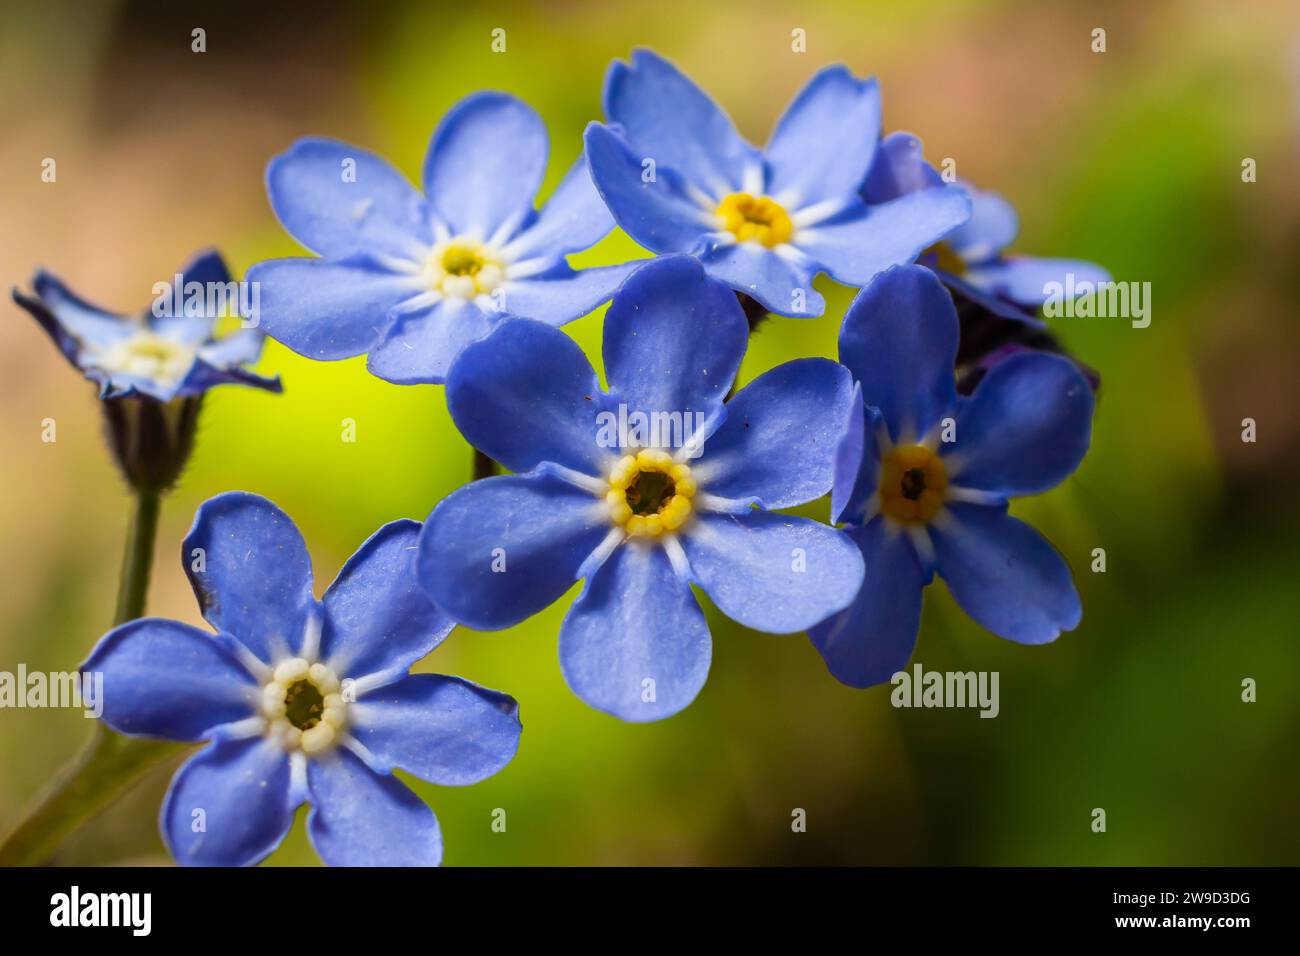 Bleu peu oubliez-moi pas de fleurs sur fond vert lors d'une journée ensoleillée en macro photographie printanière. Fleurs sauvages Myosotis aux pétales bleus Banque D'Images